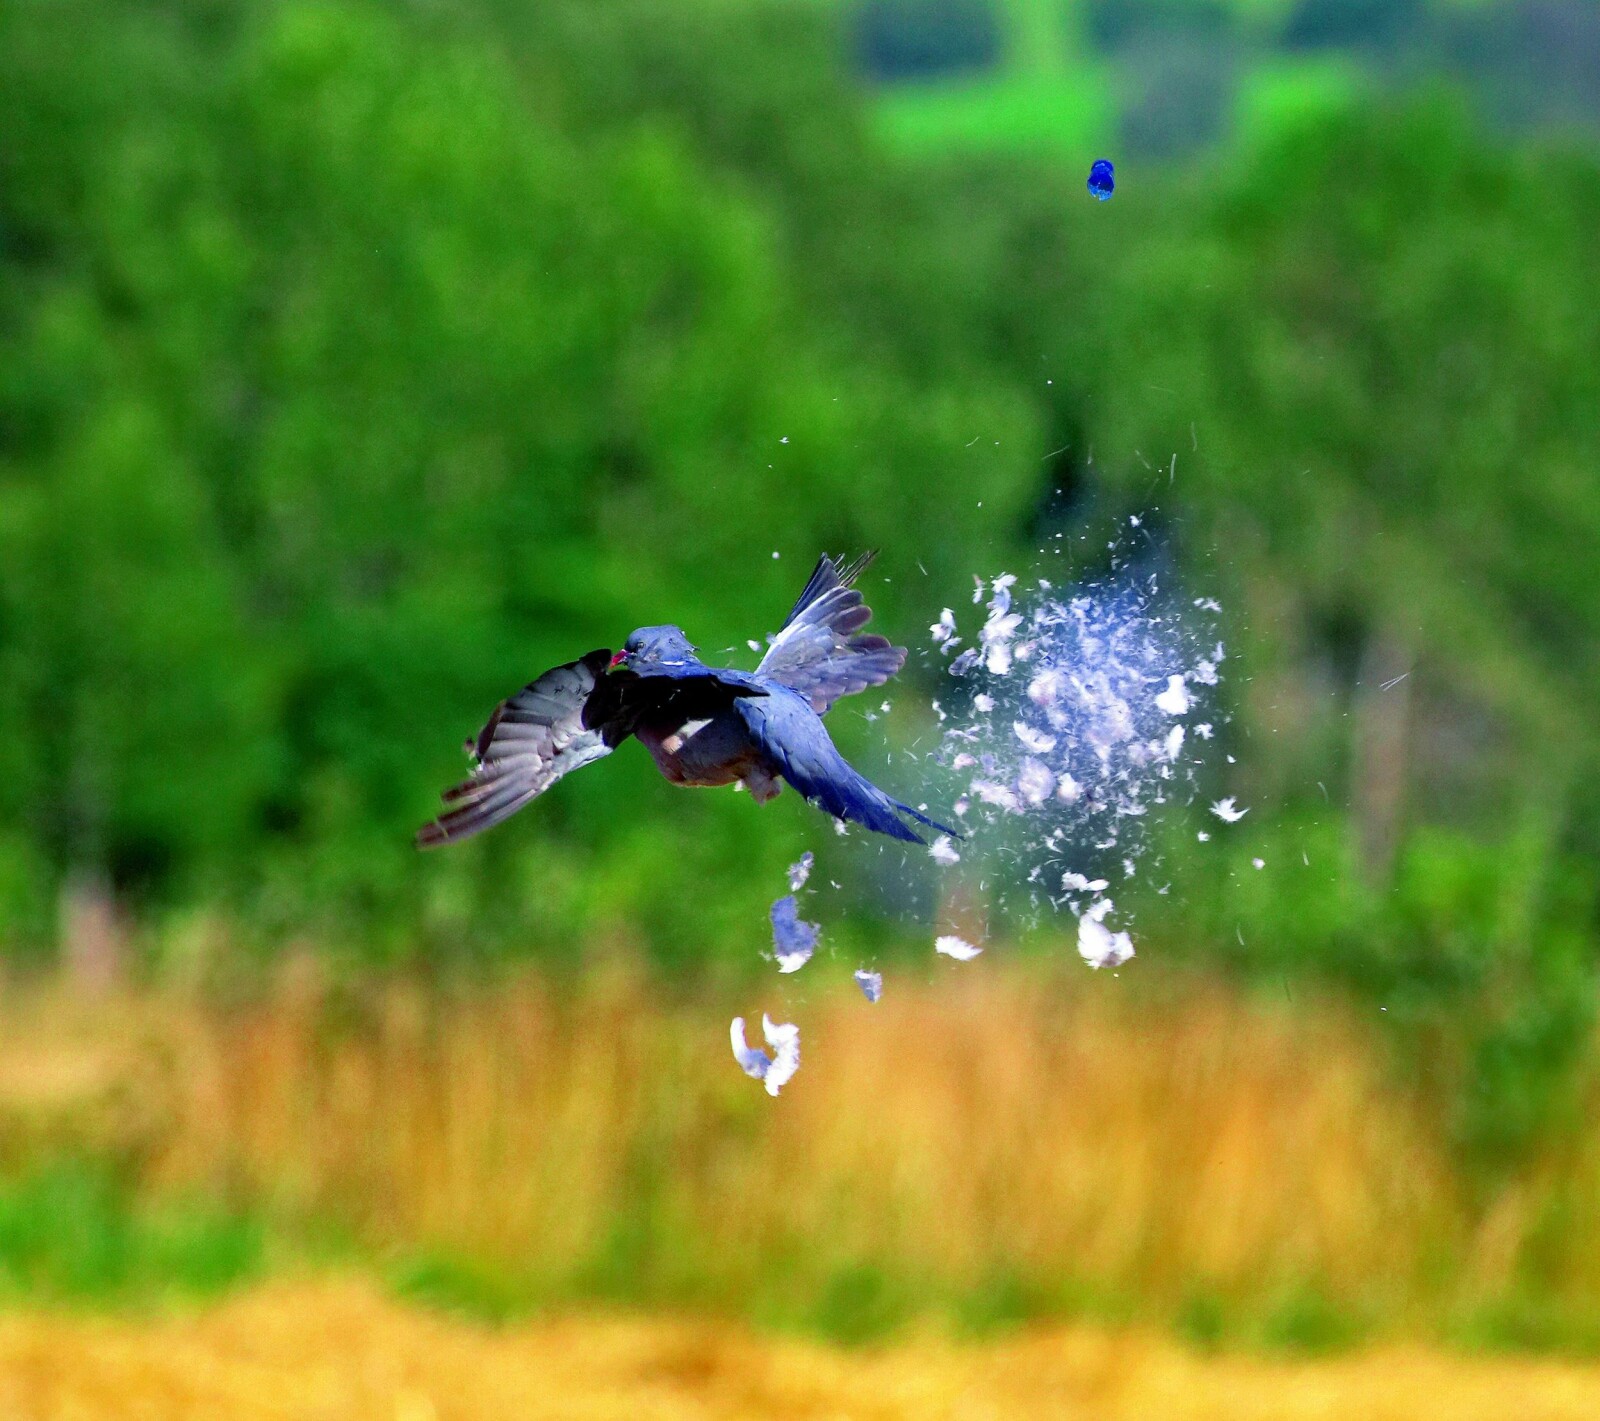 <b>KJERNETREFF:</b> Vær klar over at ei due med et kjernetreff fort kan seile 20–25 meter unna kun på farten sin. Følg den med øynene!